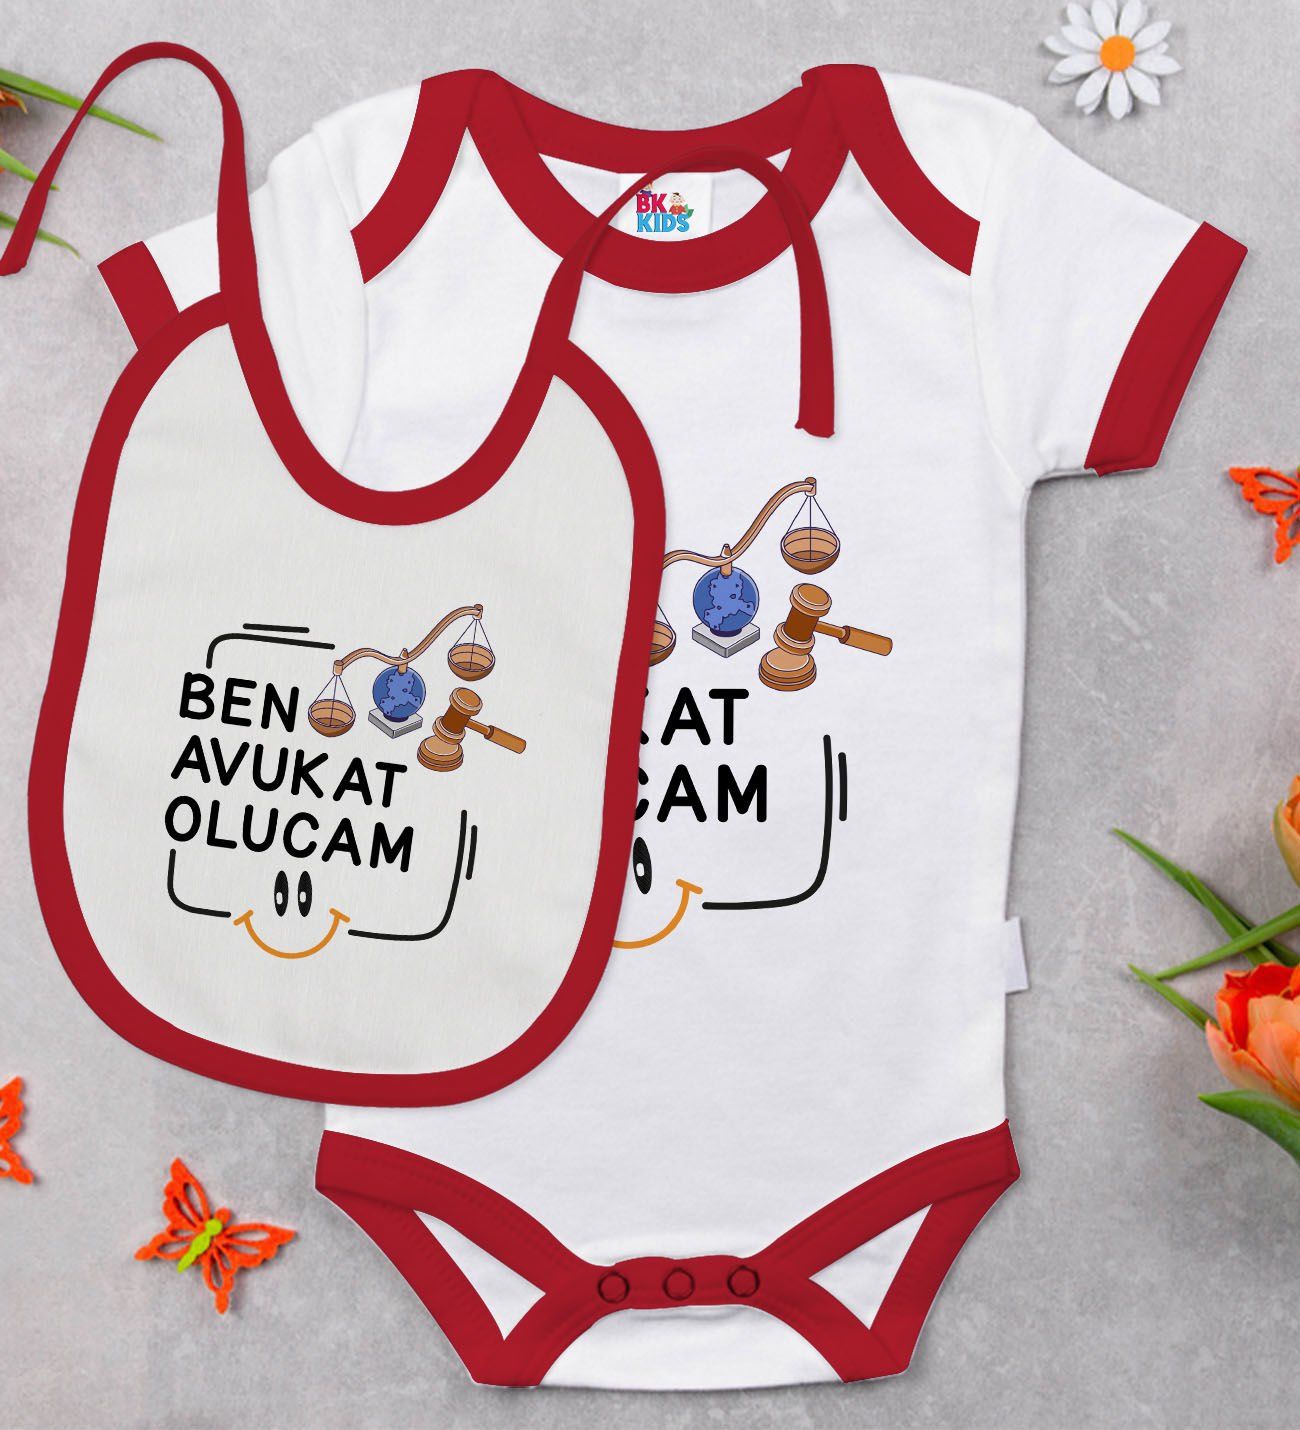 BK Kids Avukat Olucam Tasarımlı Kırmızı Bebek Body Zıbın ve Mama Önlüğü Hediye Seti-1